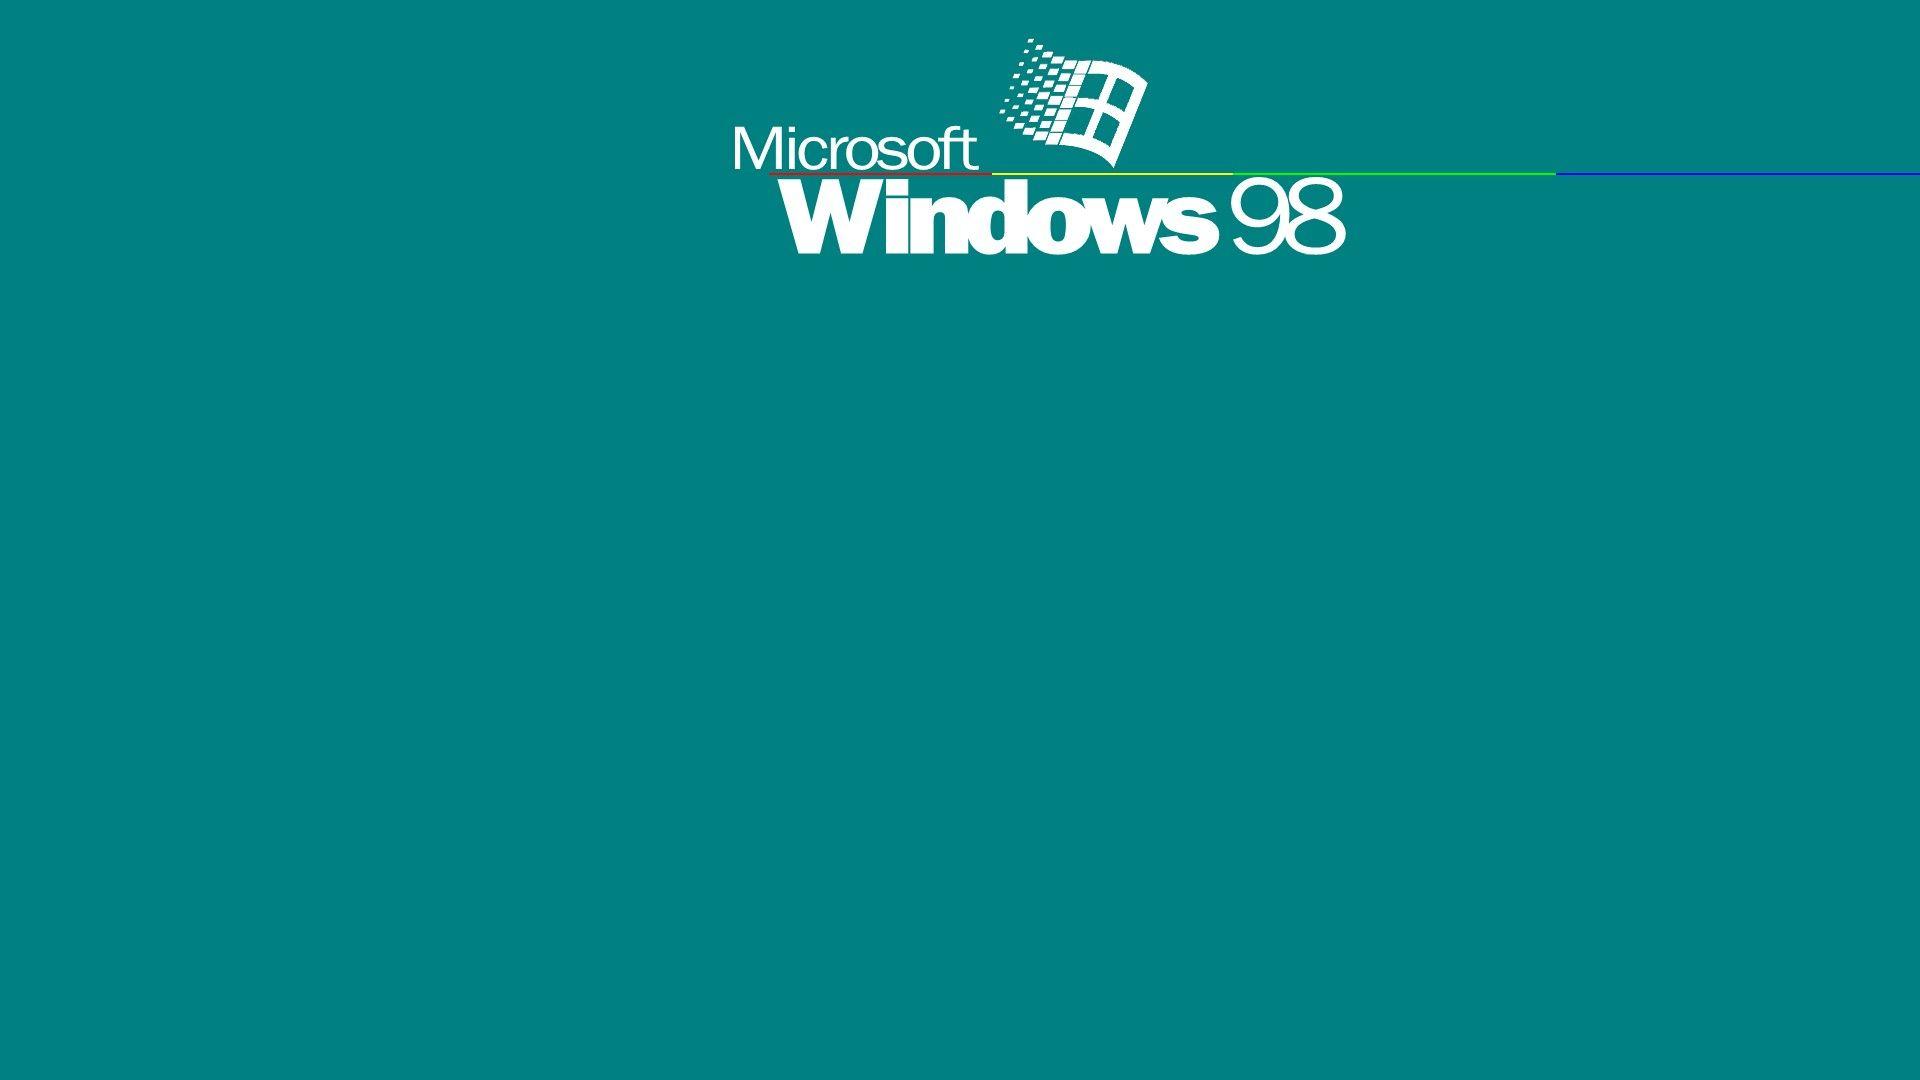 Hãy thưởng thức hình ảnh nền Desktop xanh của Windows 95 để được trải nghiệm một ngày làm việc mới với sự tươi mới và độc đáo. Hình nền mang lại cảm giác thoải mái, sáng tạo và tư duy tiên tiến cho mọi công việc.